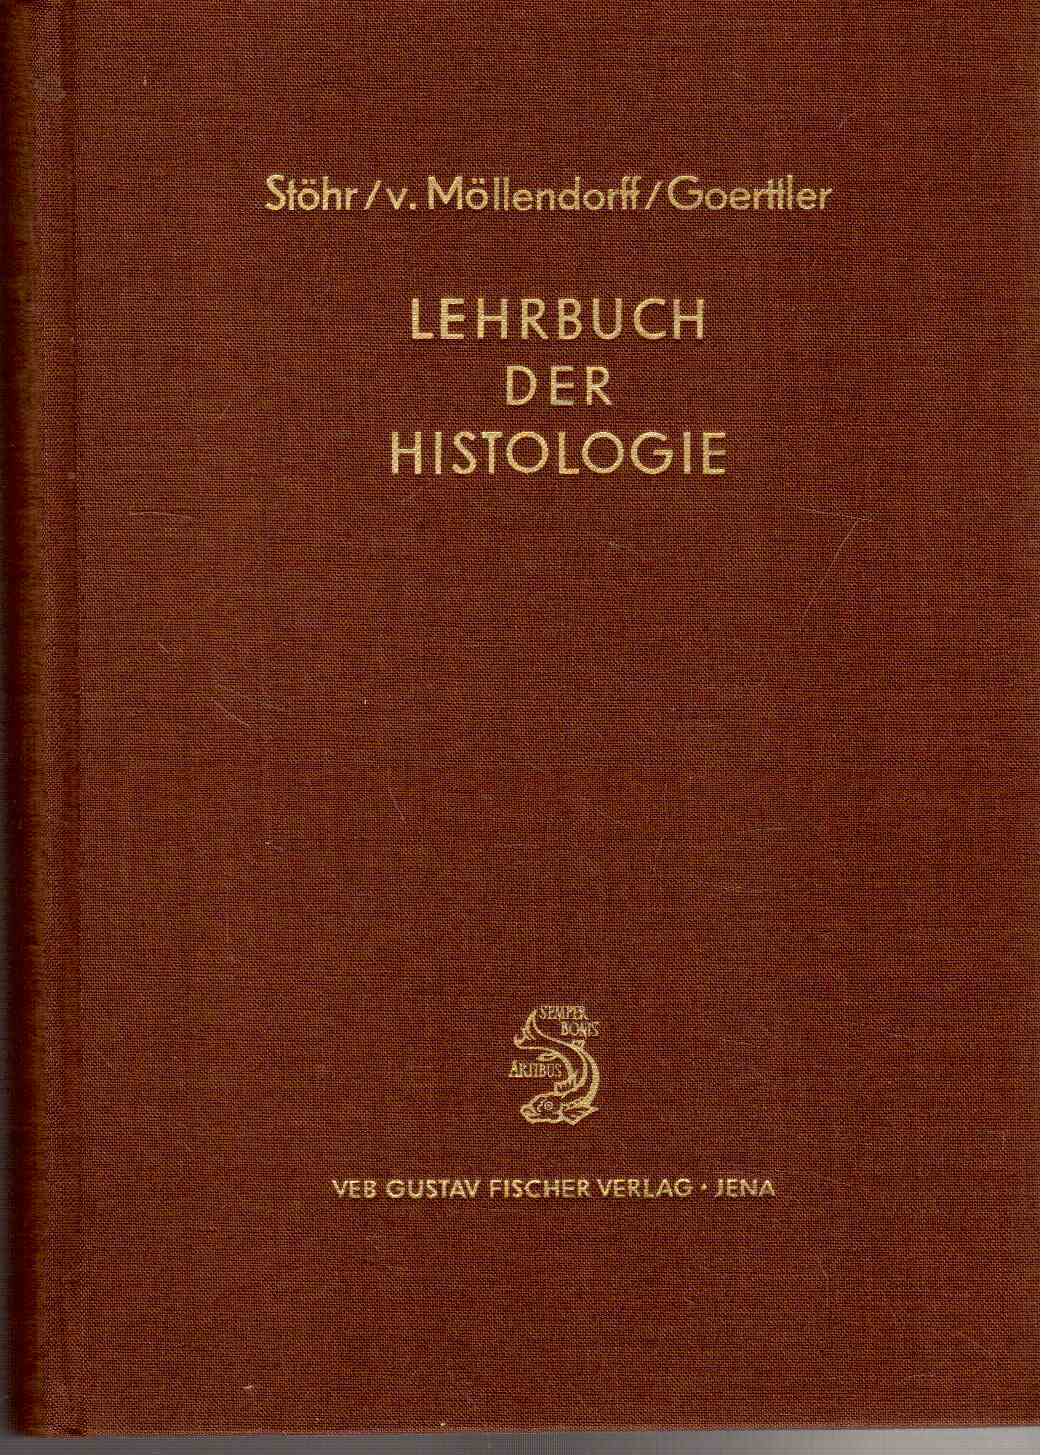 Lehrbuch der Histologie und der mikroskopischen Anatomie des Menschen